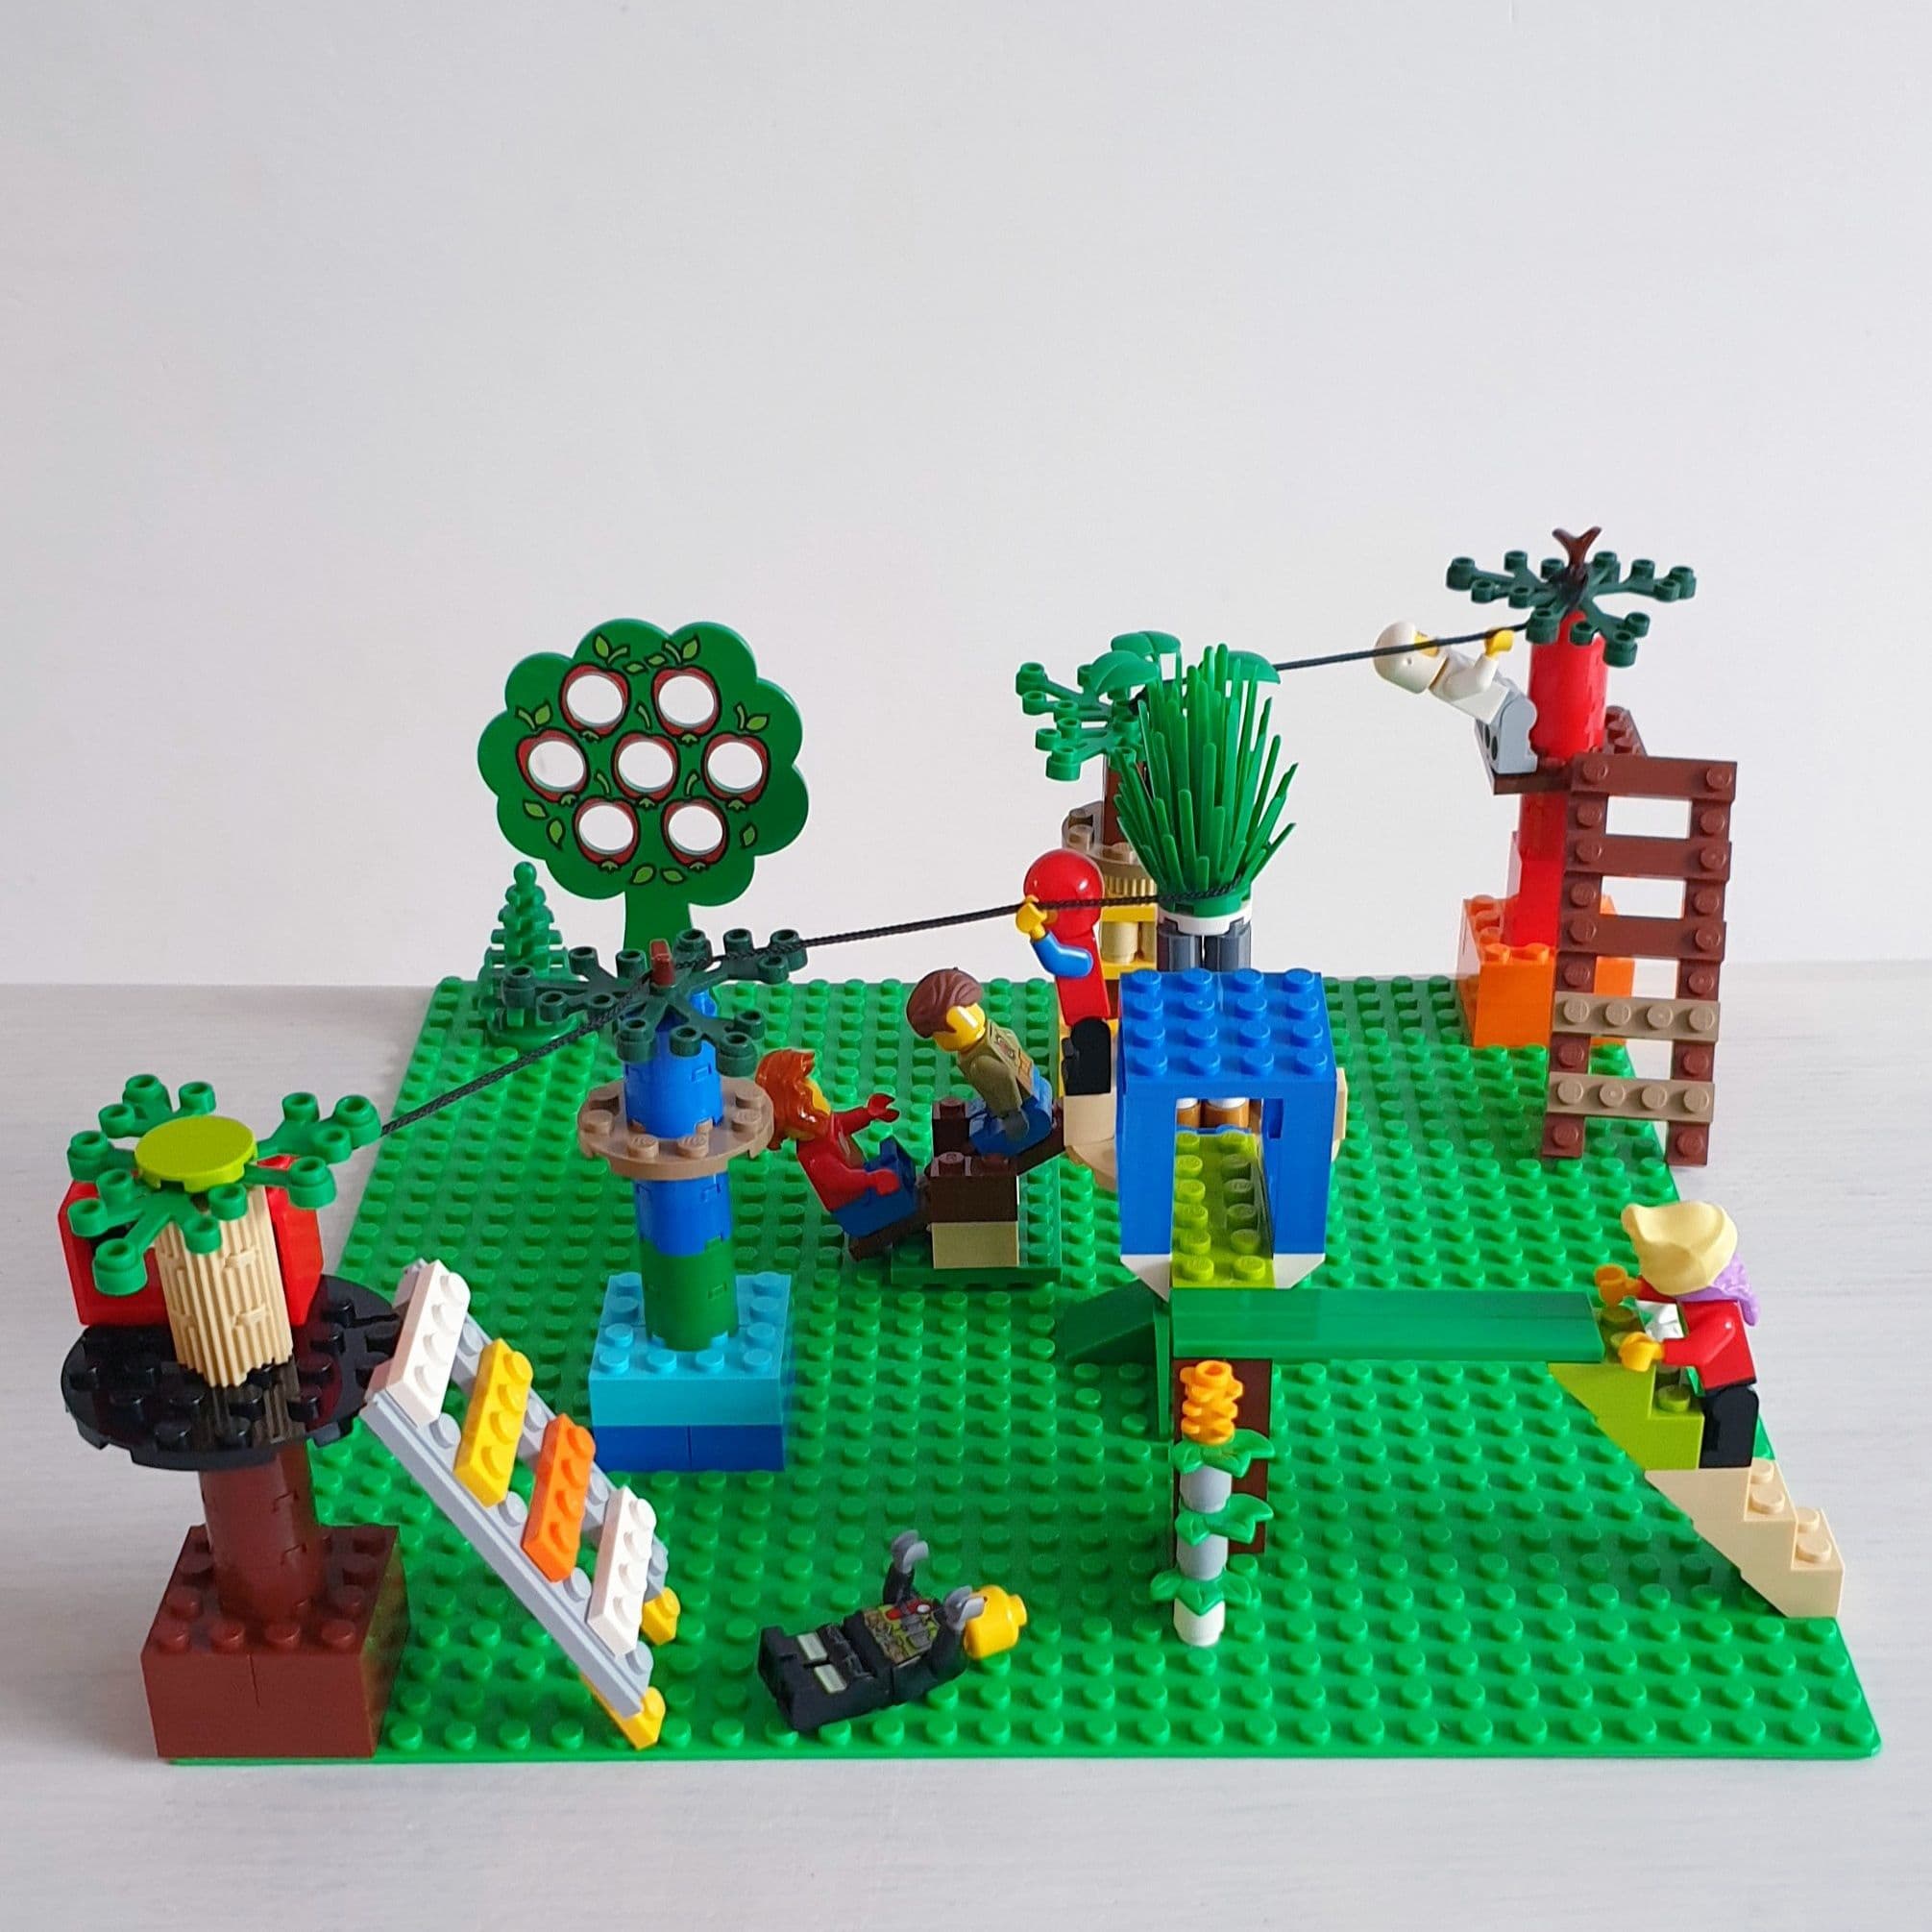 LEGO ideeën om bouwen: heel veel voorbeelden met kids